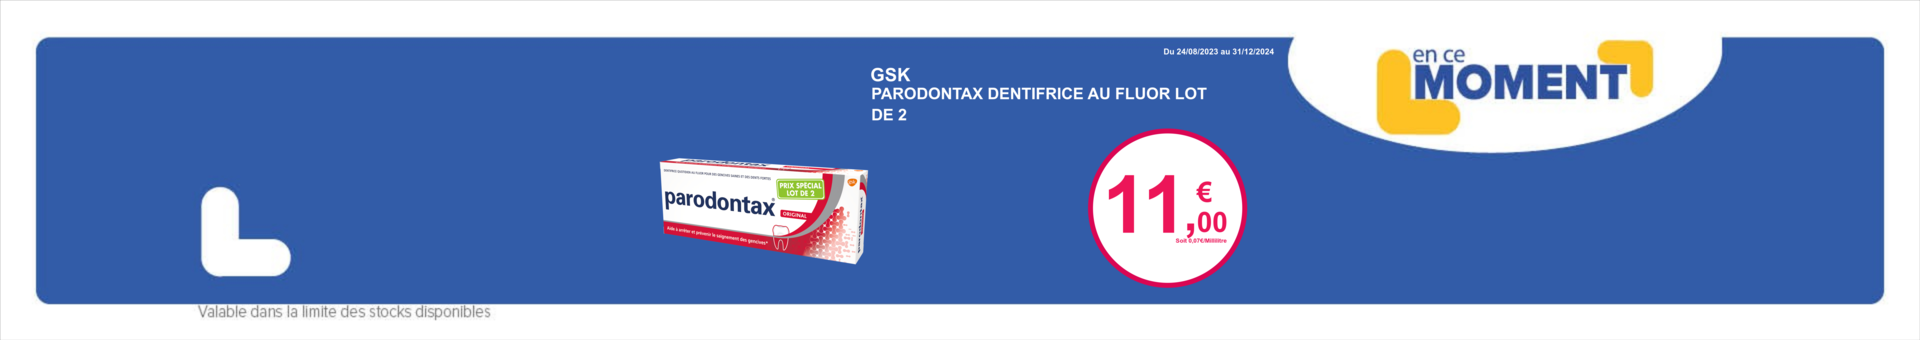 MIS À JOUR! G7 Plus Gummies (G7 GREEN GUMMIES AVIS) 2023- G7 Plus Green  Gummies Perte De Poids Minceur Avantages, Prix en Pharmacie France